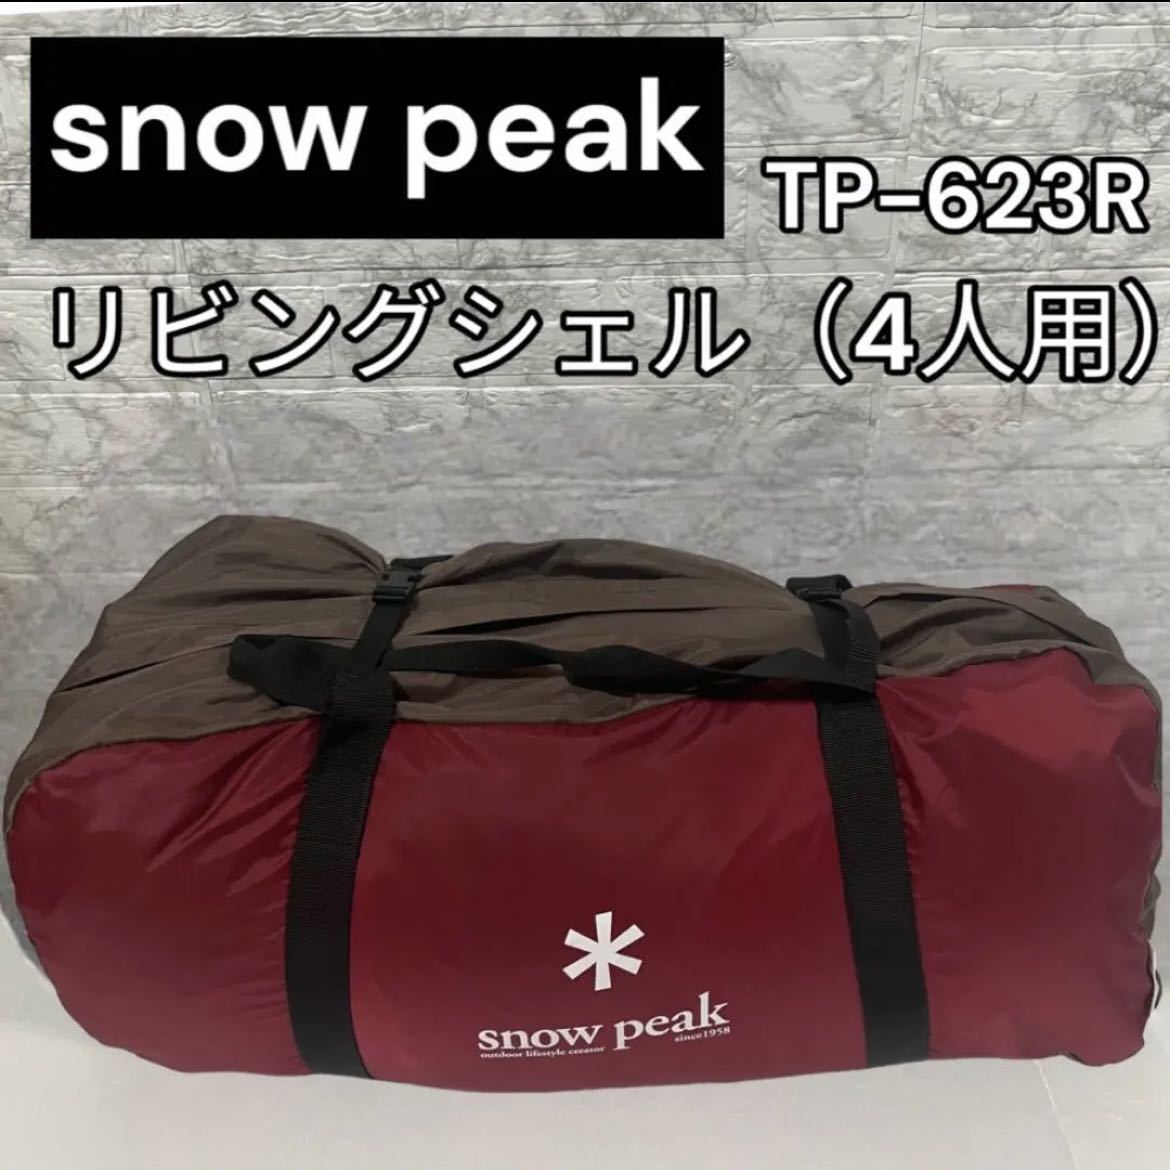 良品　スノーピーク　snow peakリビングシェル[4人用]TP-623R